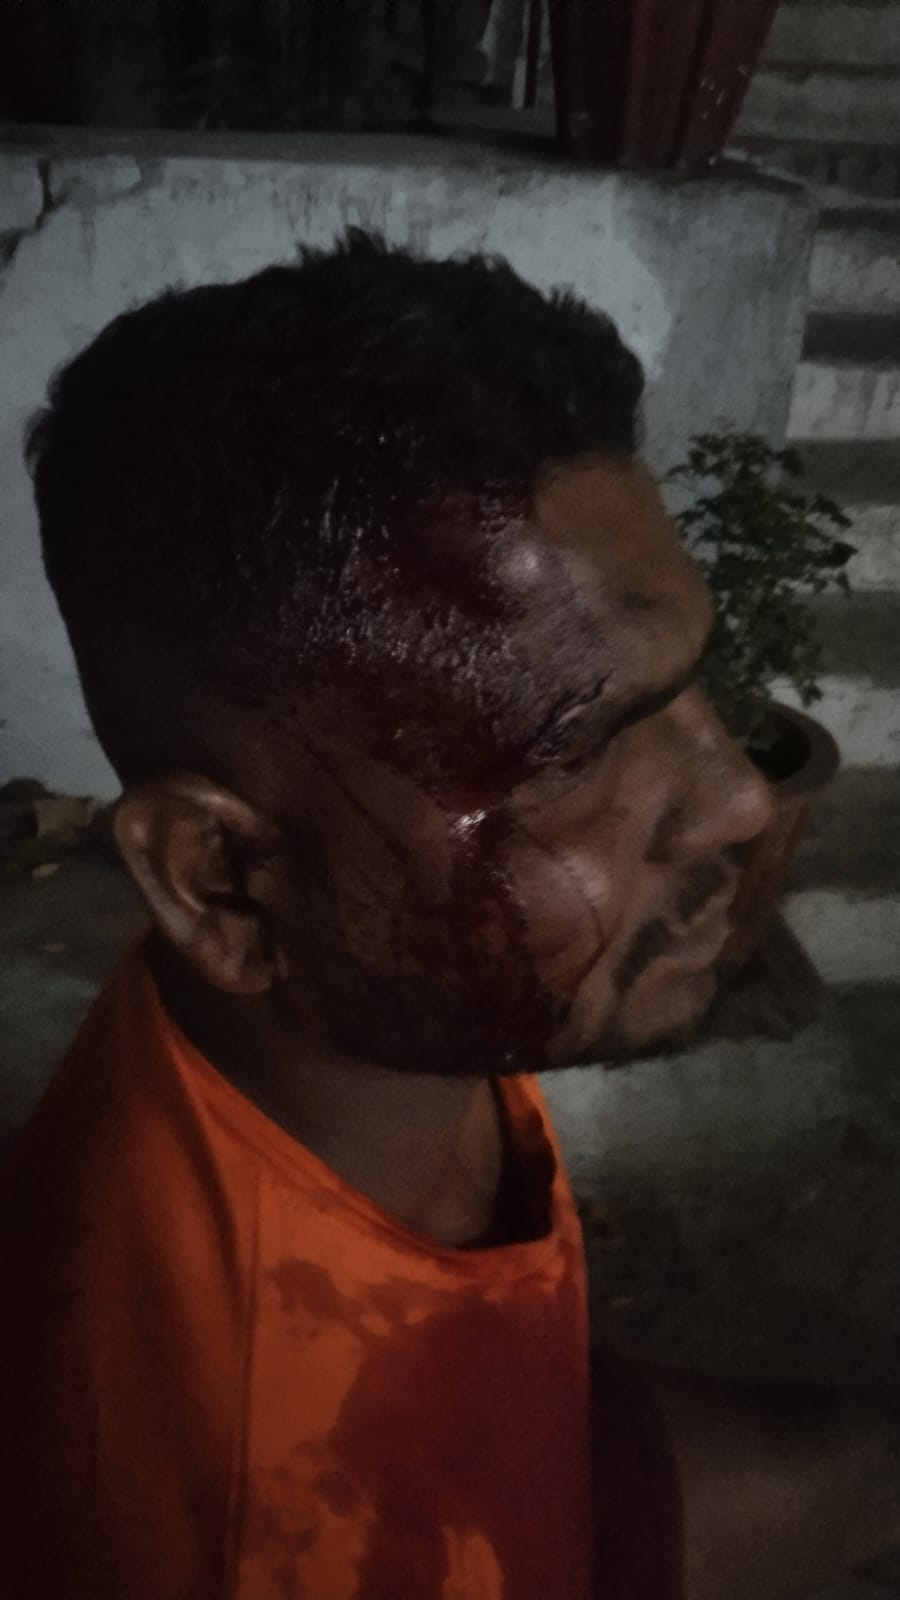 पुरानी रंजिशवश रॉड एवं डंडे से घर के बाहर खड़े युवक पर जानलेवा हमला, जीआरपी भिलाई थाने में अपराध दर्ज